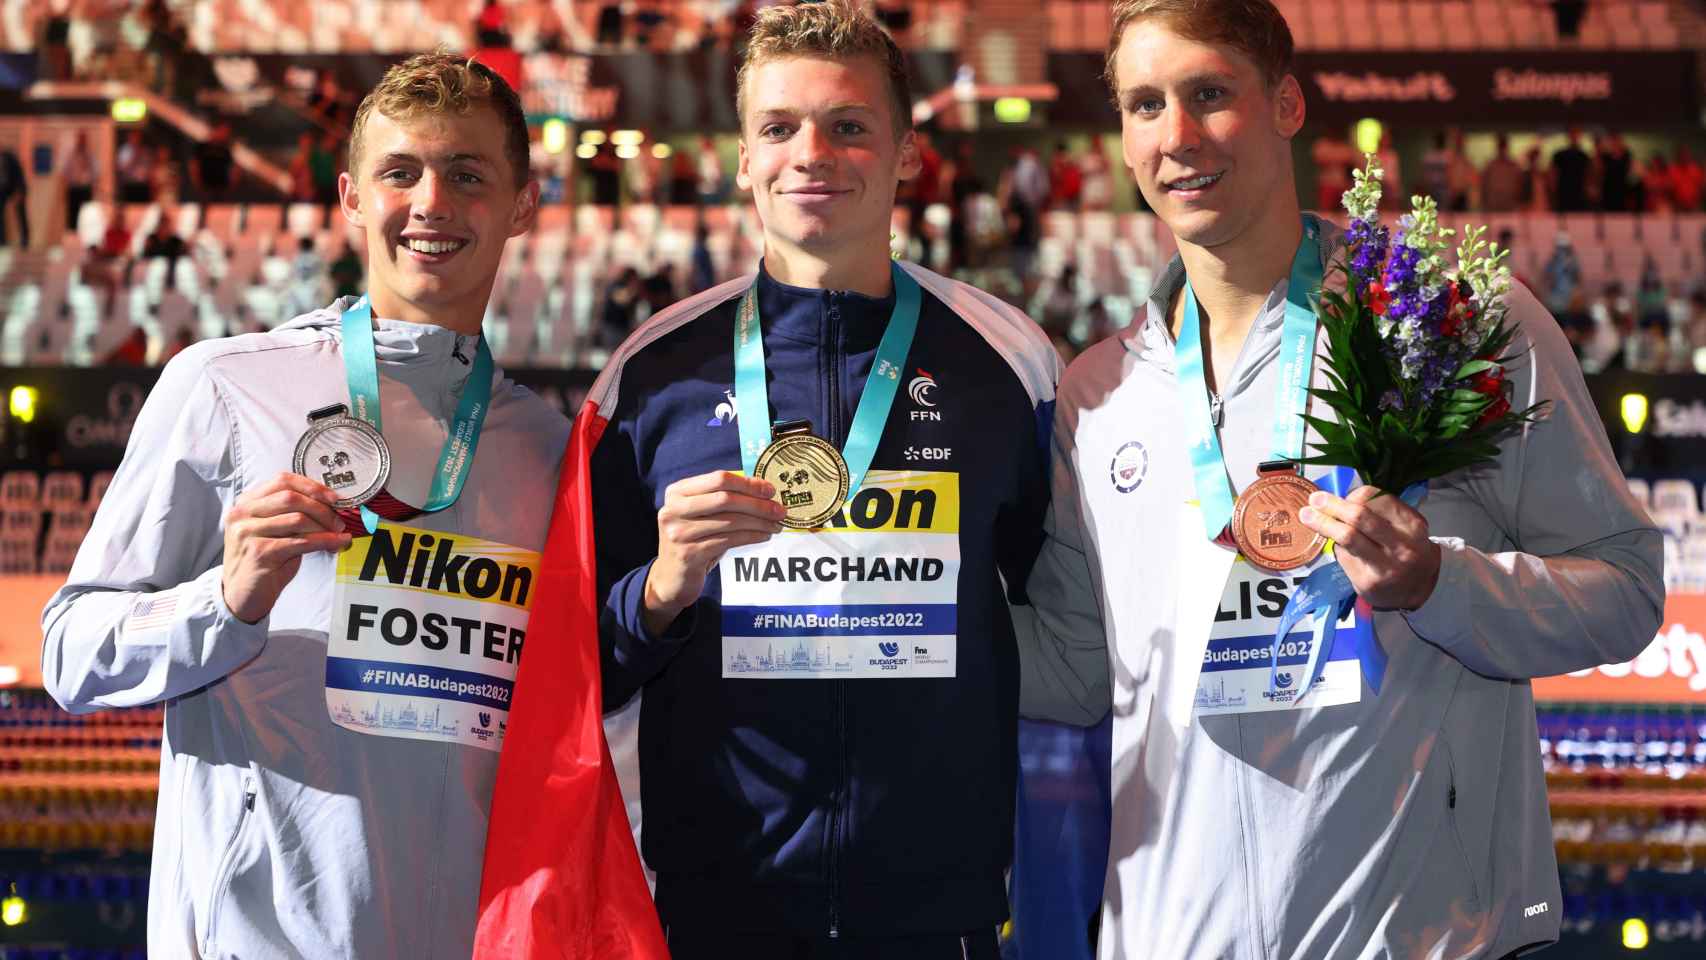 Leon Marchand, en el centro de la imagen, posa con su oro en los Mundiales de Budapest.